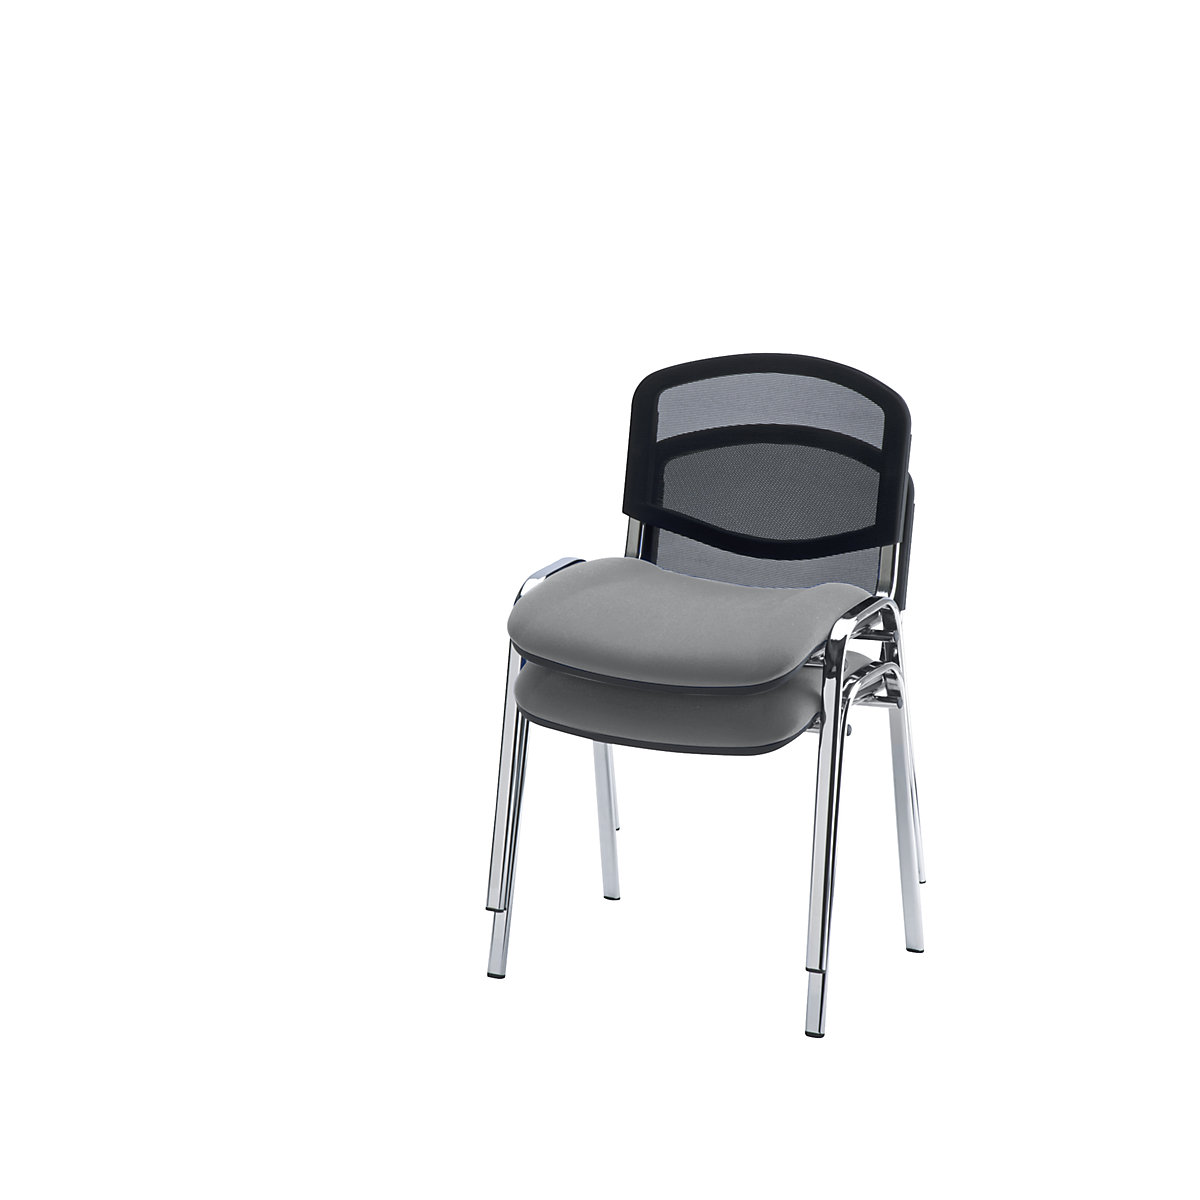 Krzesło dla gości, ustawiane w stos, oparcie z siateczki, szkielet chromowany, obicie szare, opak. 4 szt.-7